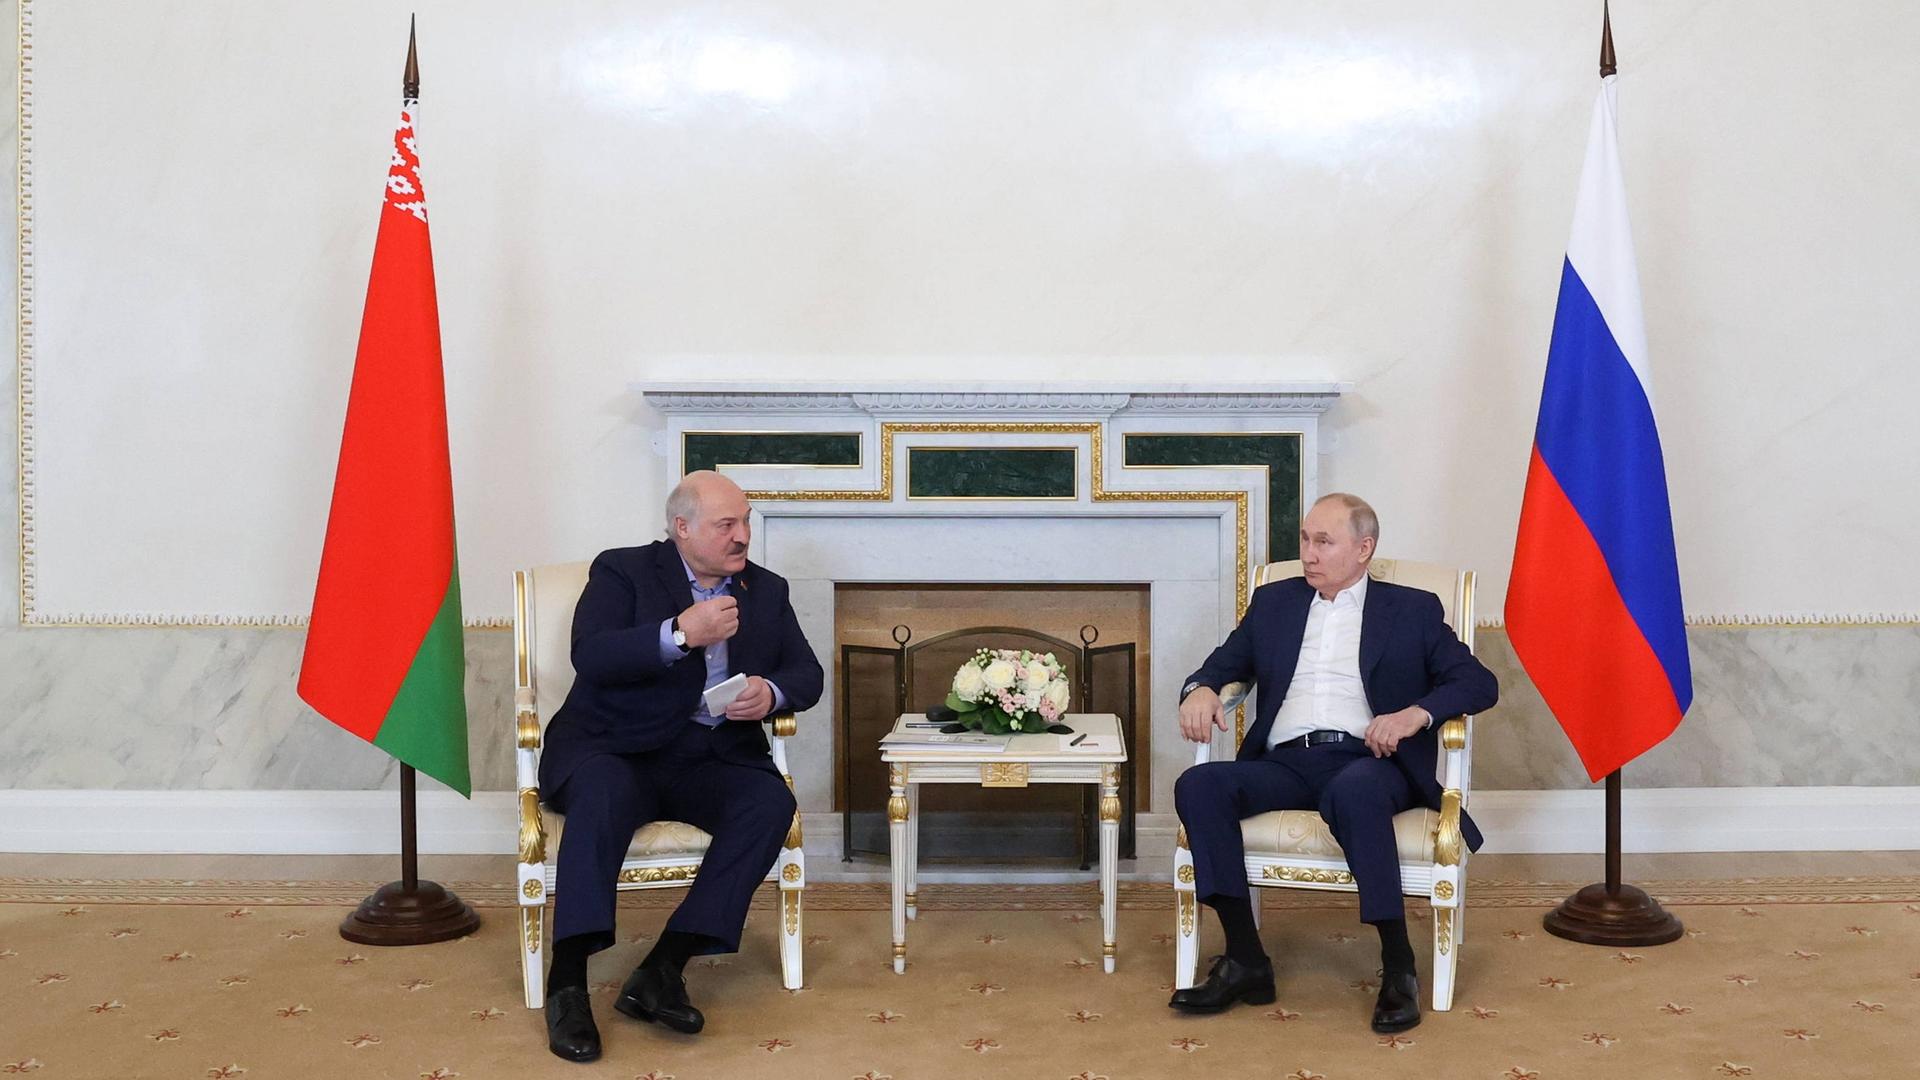 Der Präsident von Belarus Alexander Lukashenko und Russlands Präsident Vladimir Putin gemeinsam an einem Tisch neben ihren Landesflaggen